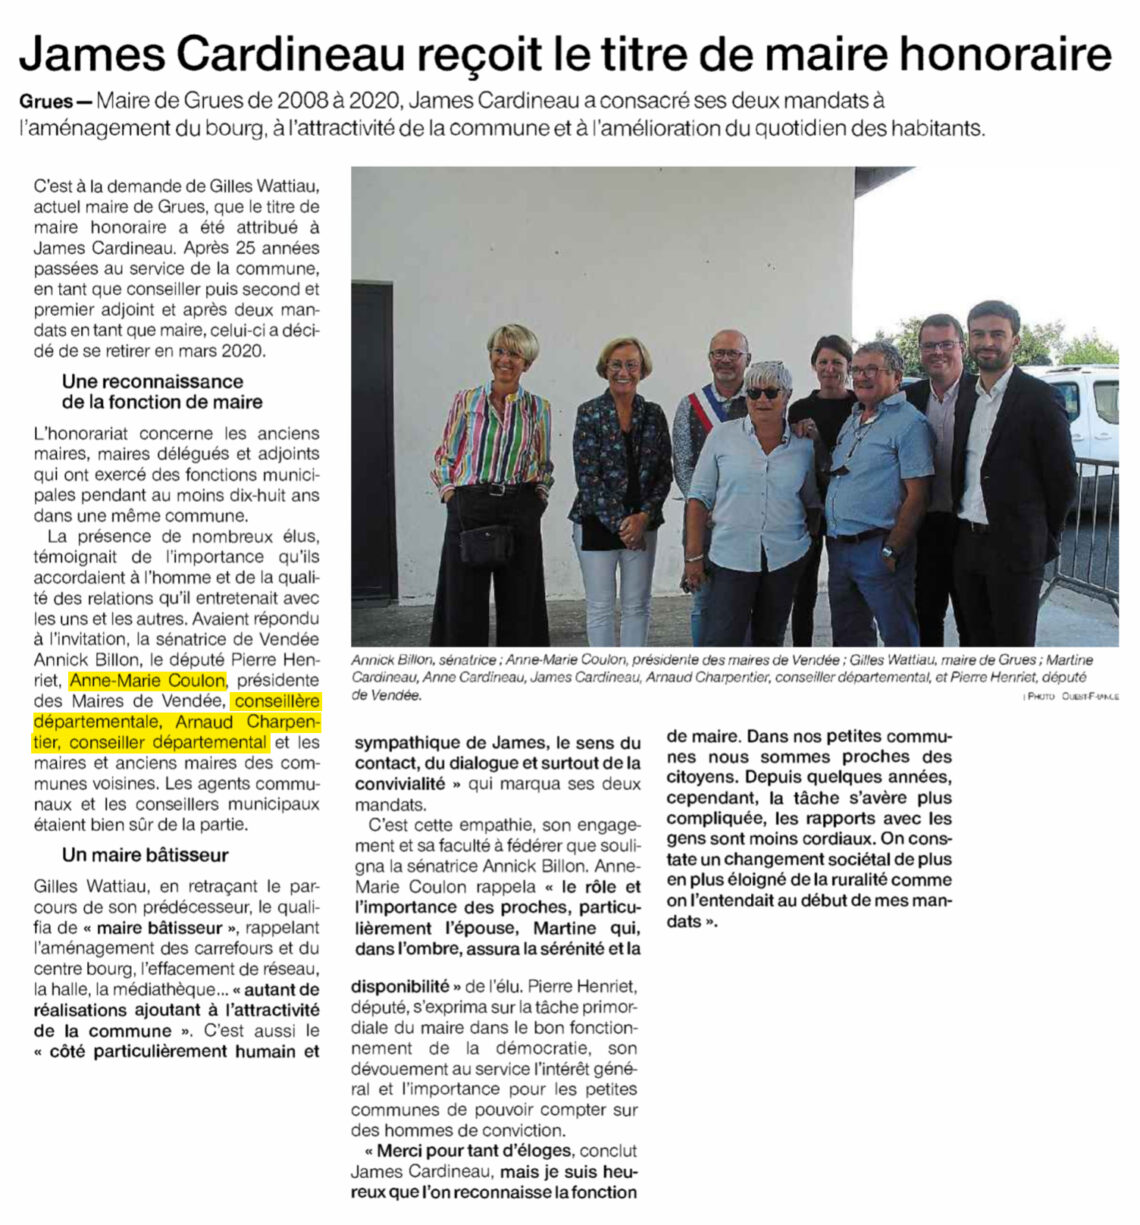 James Cardineau reçoit le titre de maire honoraire